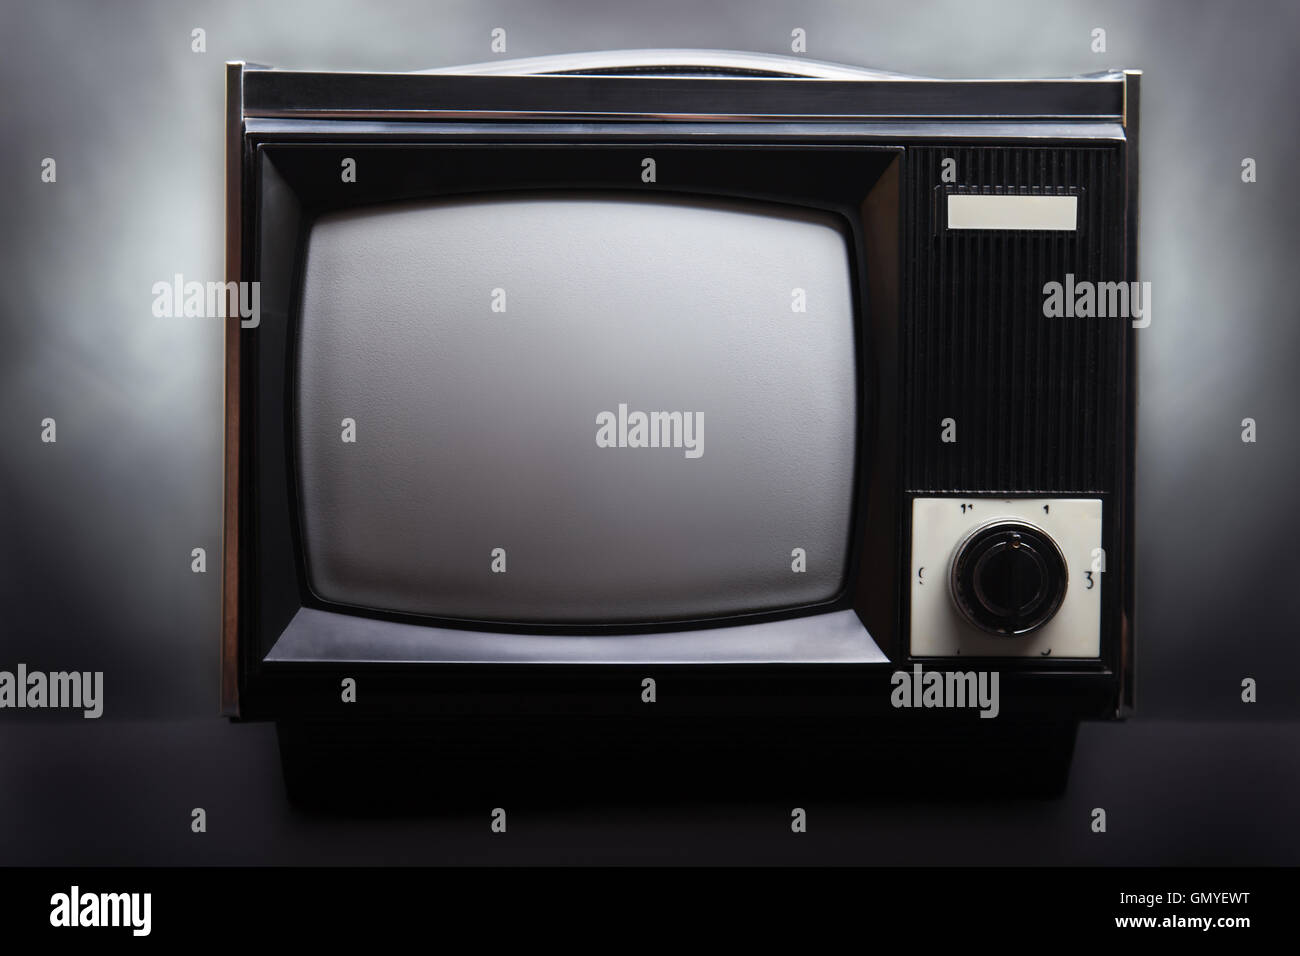 Retro television screen Stock Photo